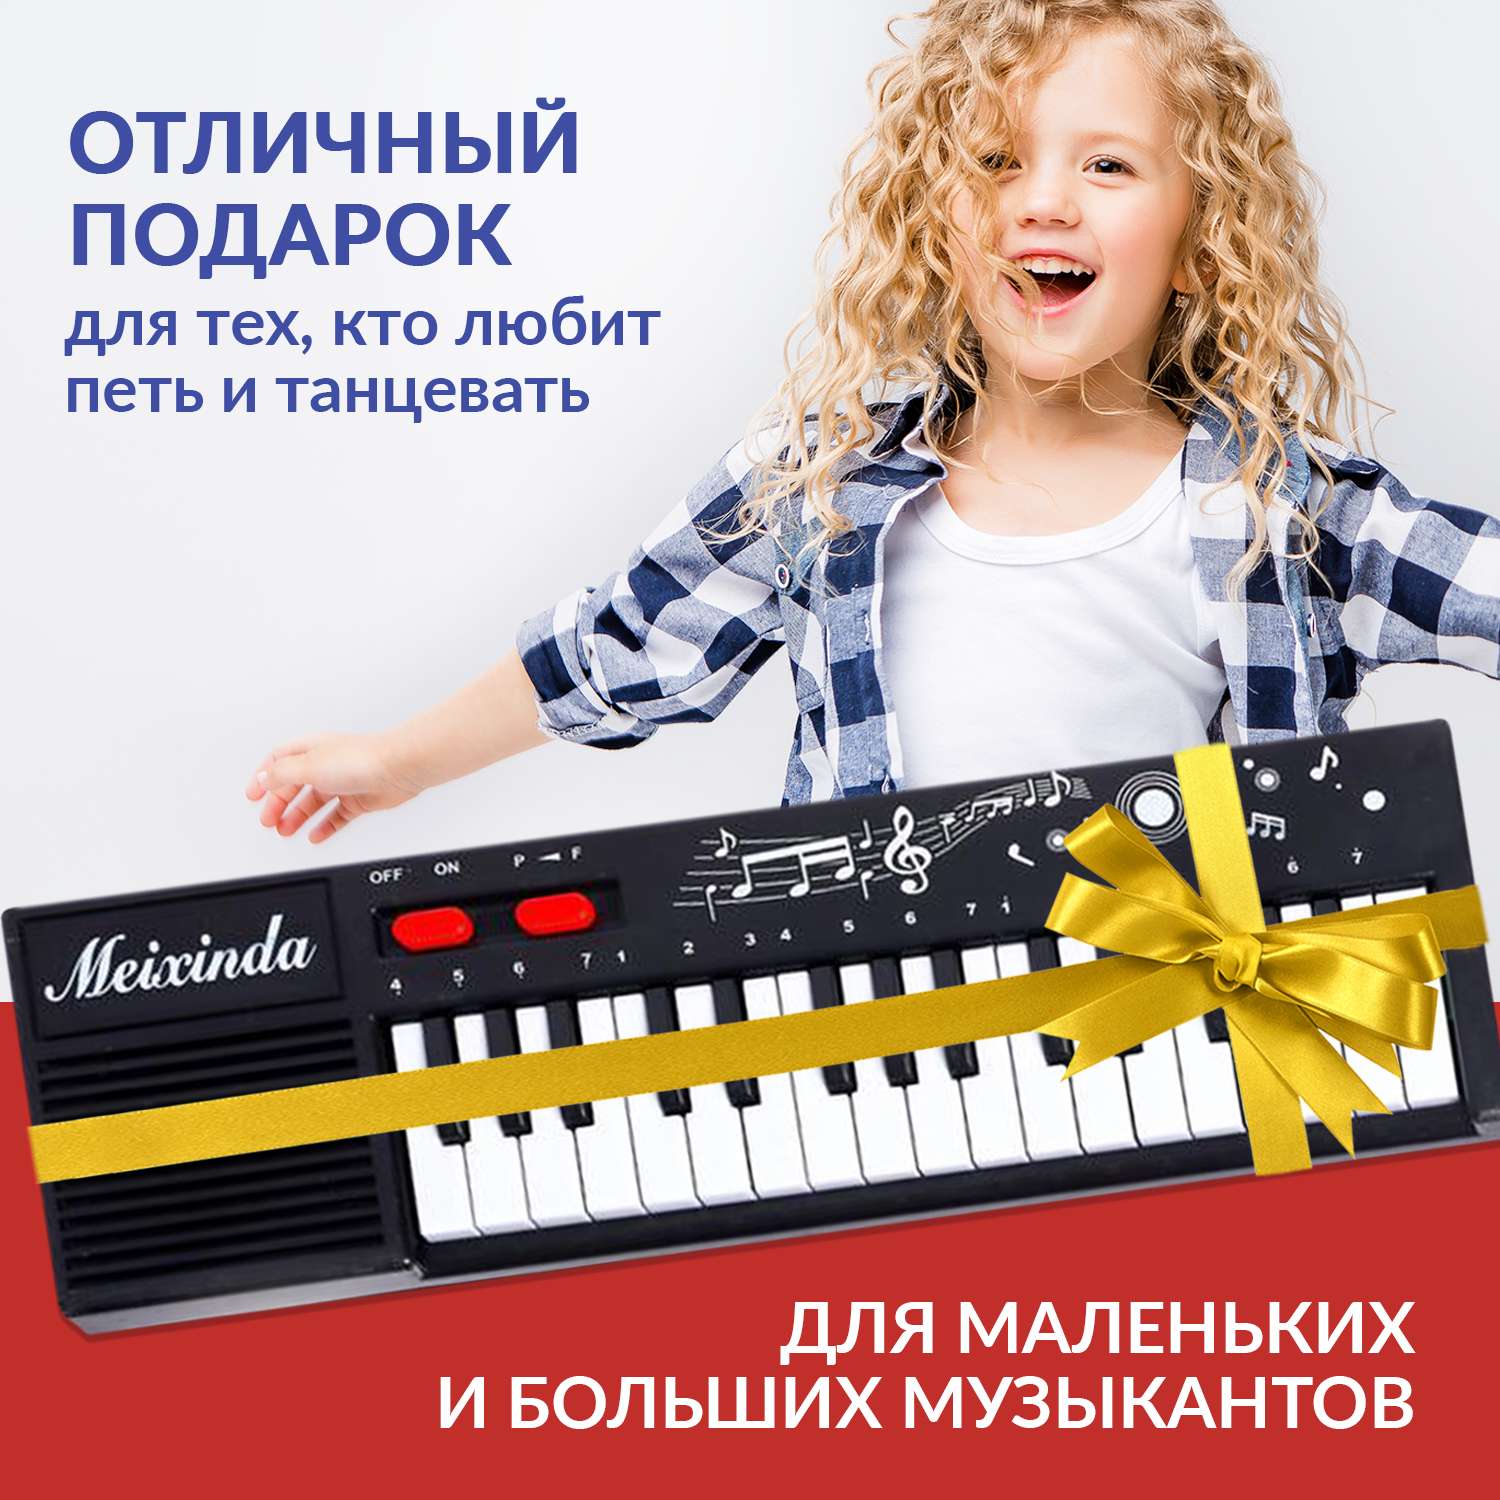 Детское пианино FAIRYMARY синтезатор детский с микрофоном - фото 7